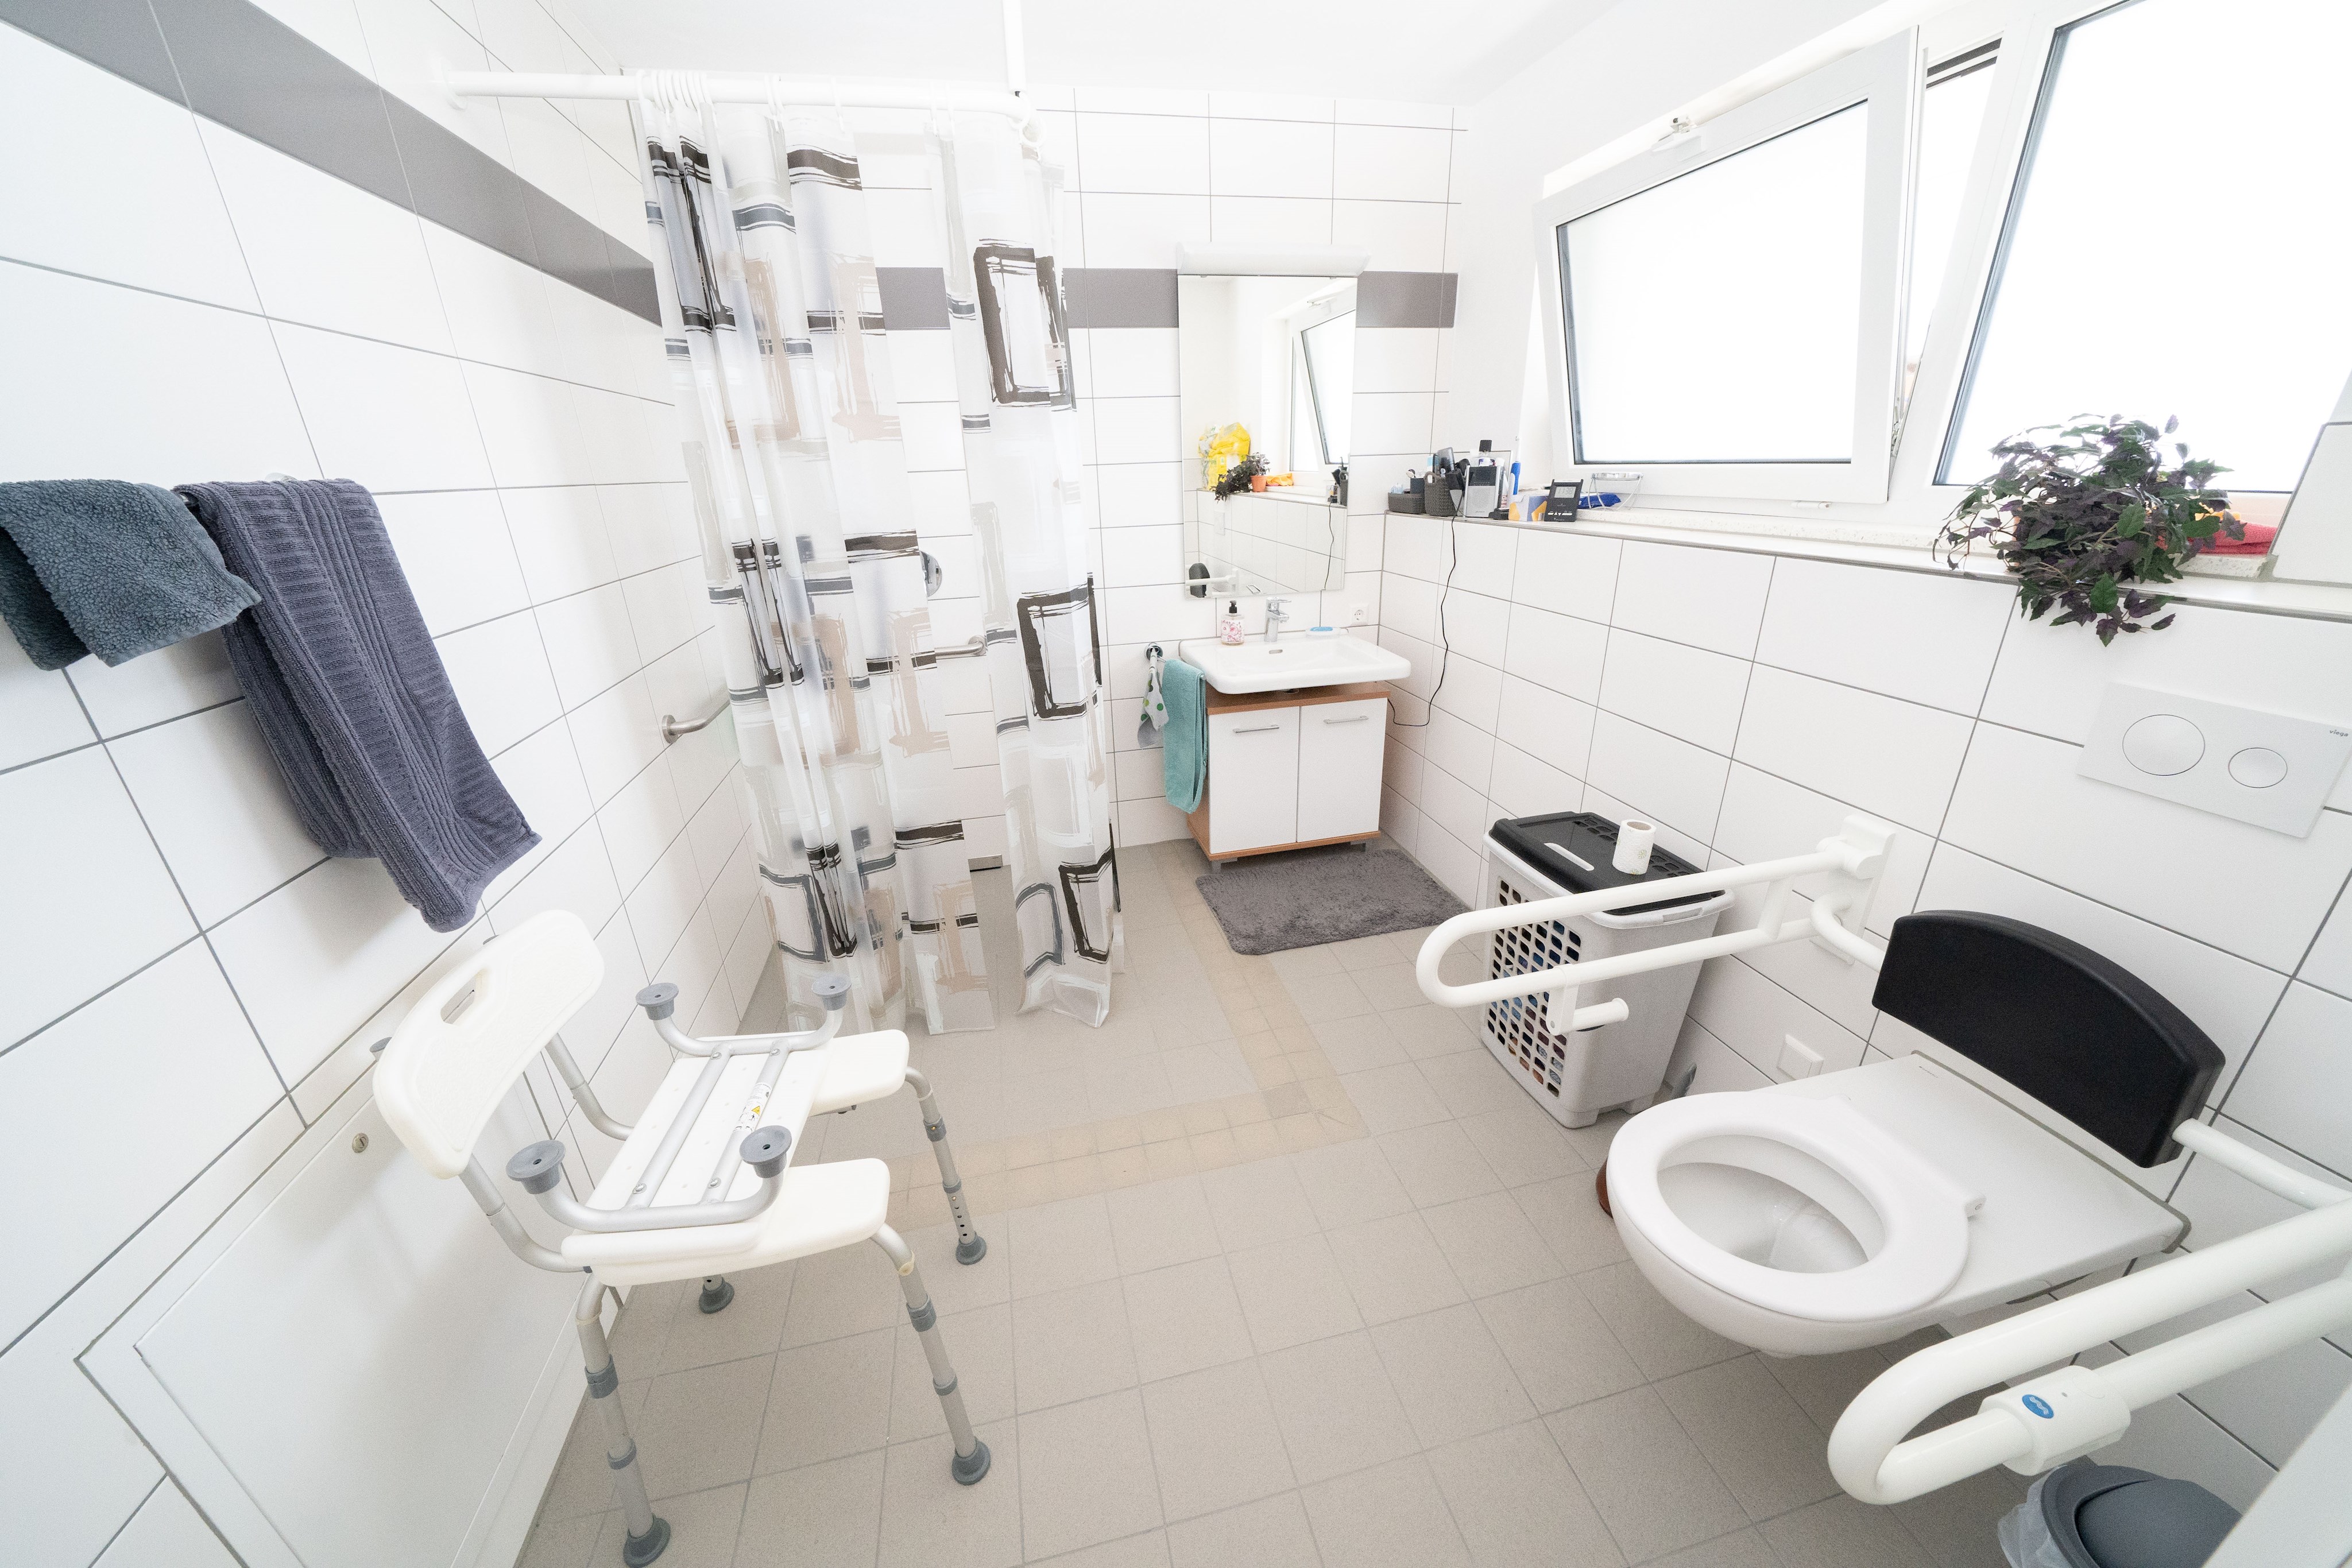 Foto: ein Badezimmer mit ebenerdiger Dusche und einer Toilette mit Handgriffen zum Festhalten an beiden Seiten